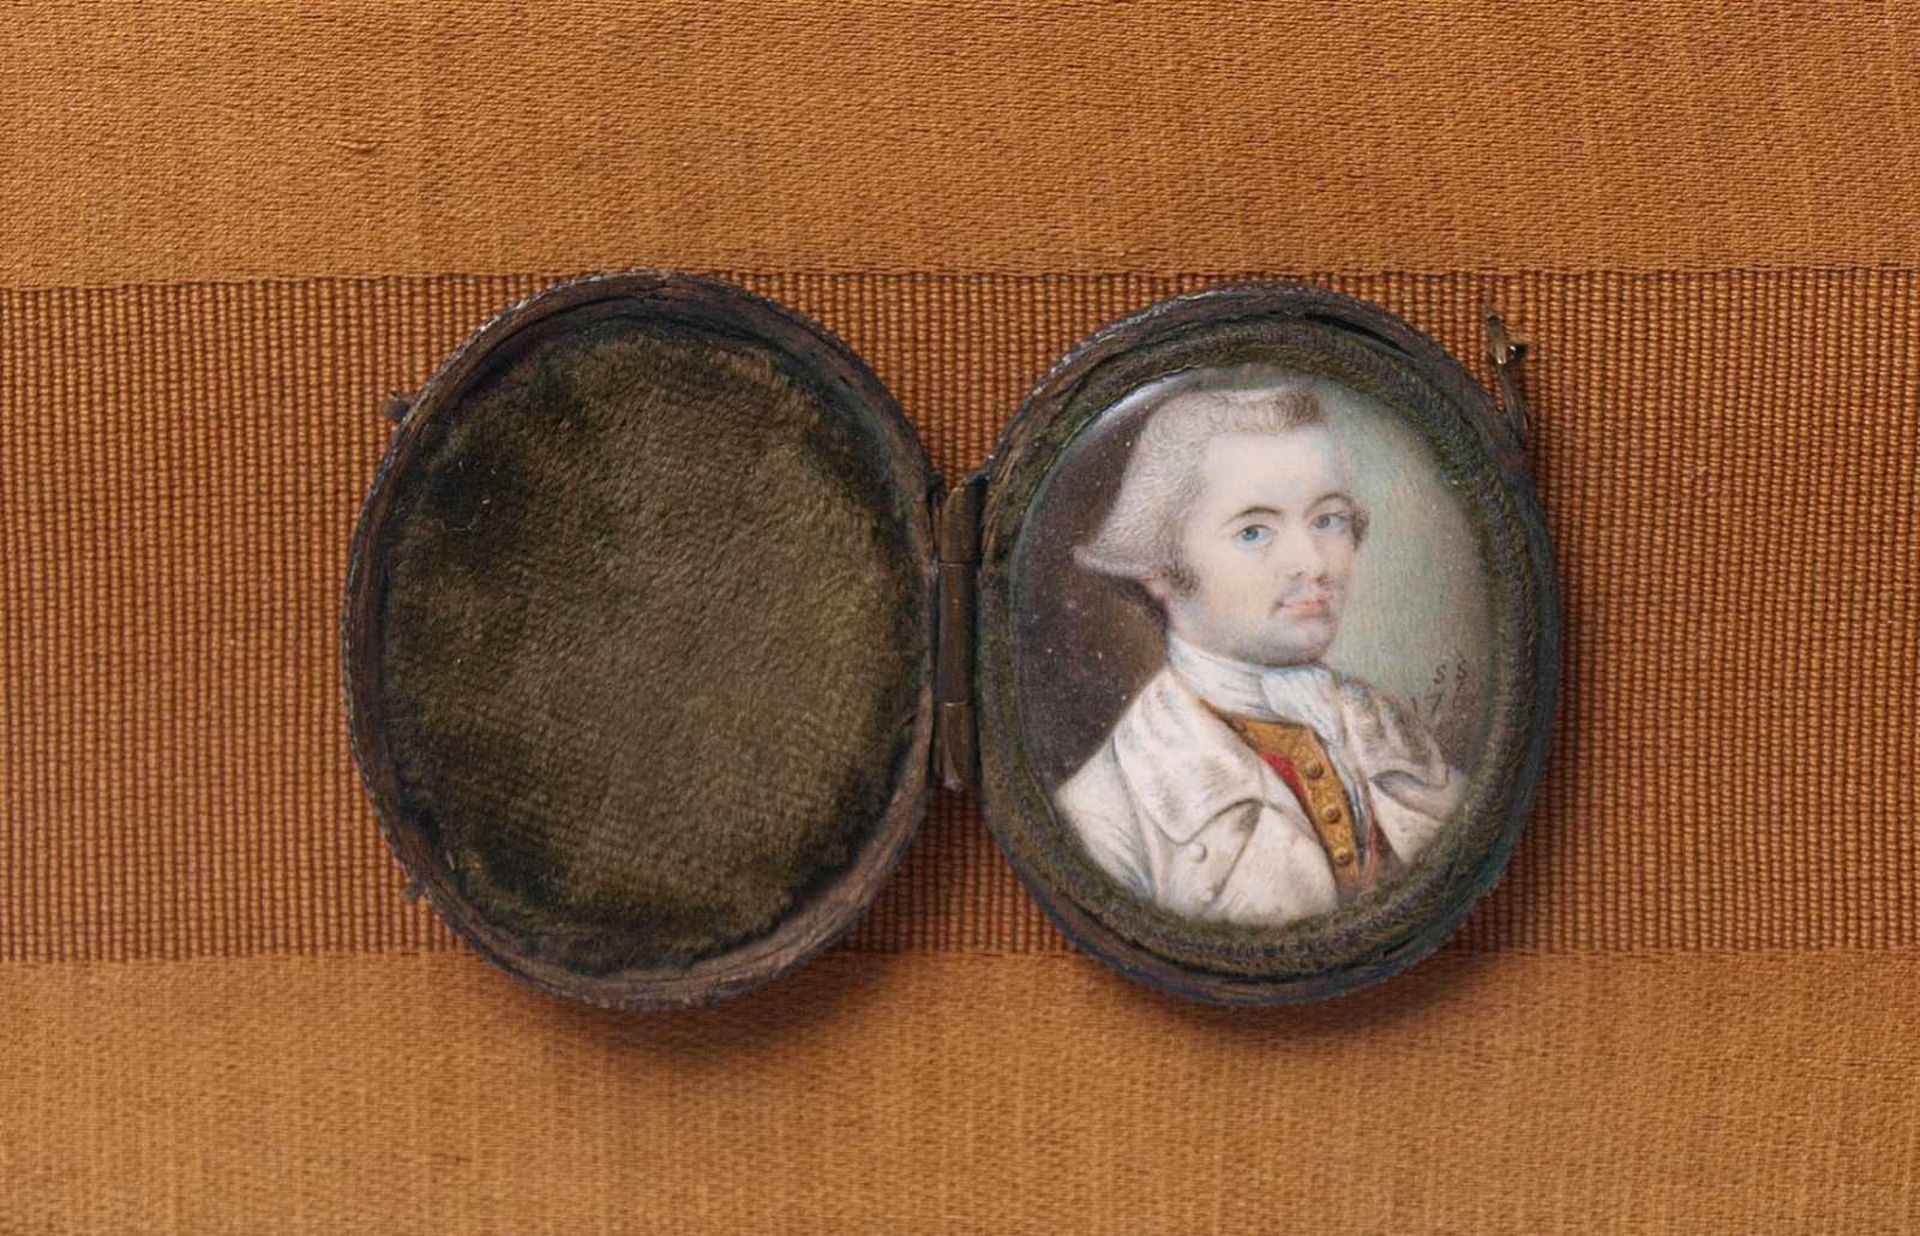 Miniatur, um 1760 Brustbild eines Herrn mit gepudertem Haar. Er trägt unter dem weißen Gehrock